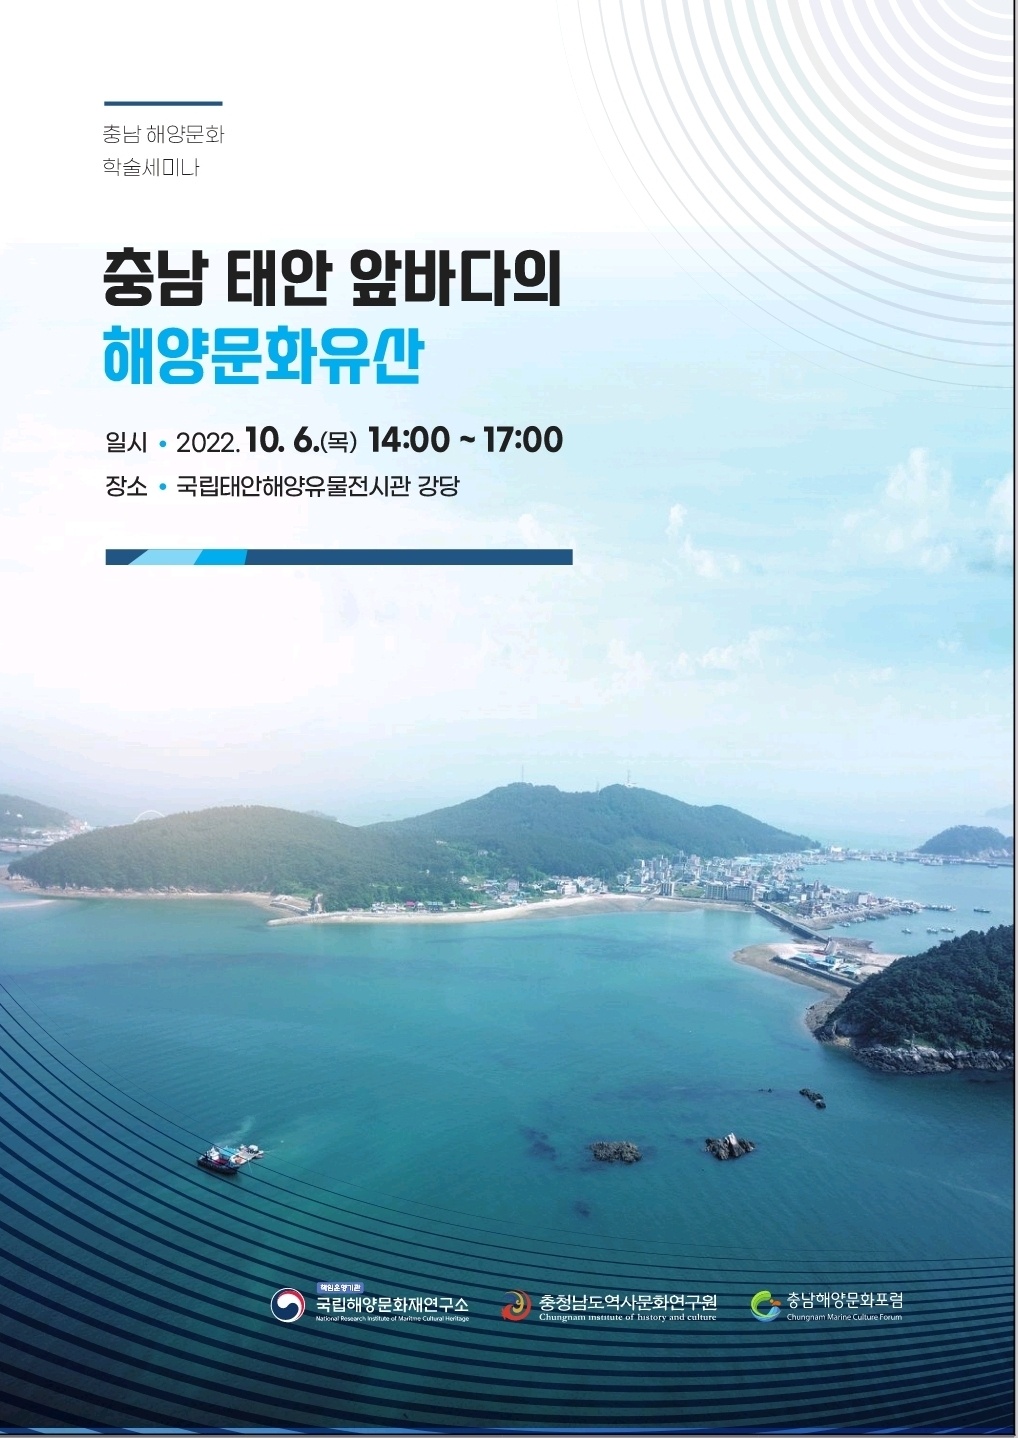 '충남 태안 앞바다의 해양문화유산' 충남해양문화 학술세미나 개최